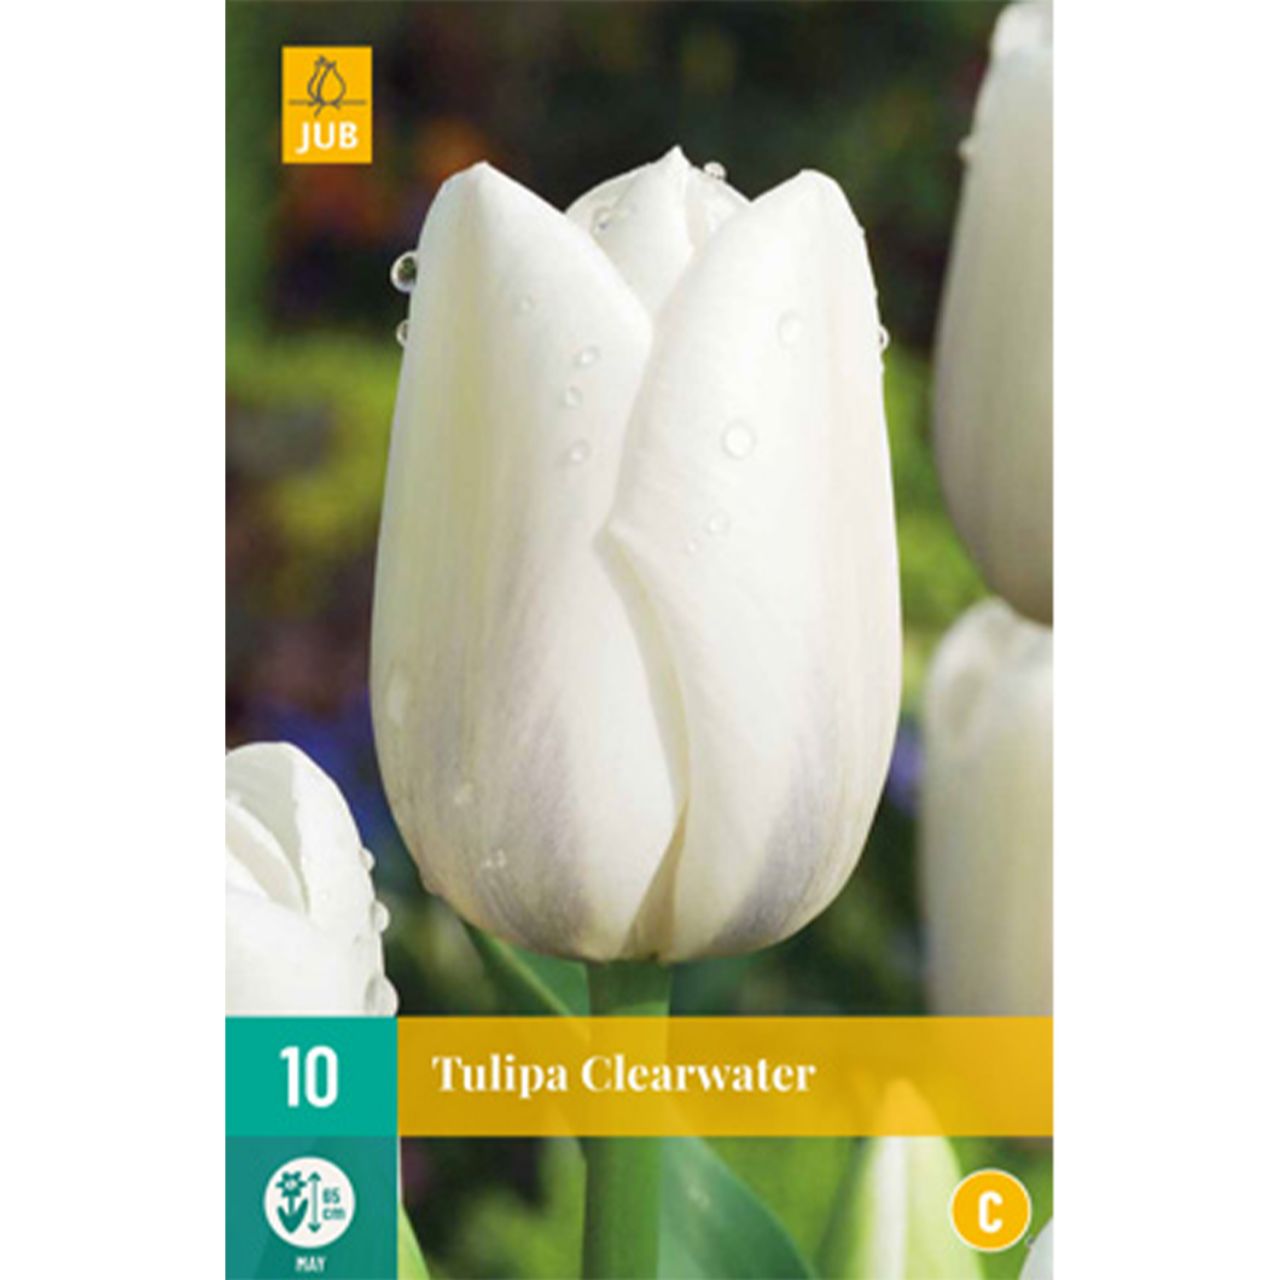 Kategorie <b>Herbst-Blumenzwiebeln </b> - Einfache späte Tulpe 'Clearwater' - 10 Stück - Tulipa